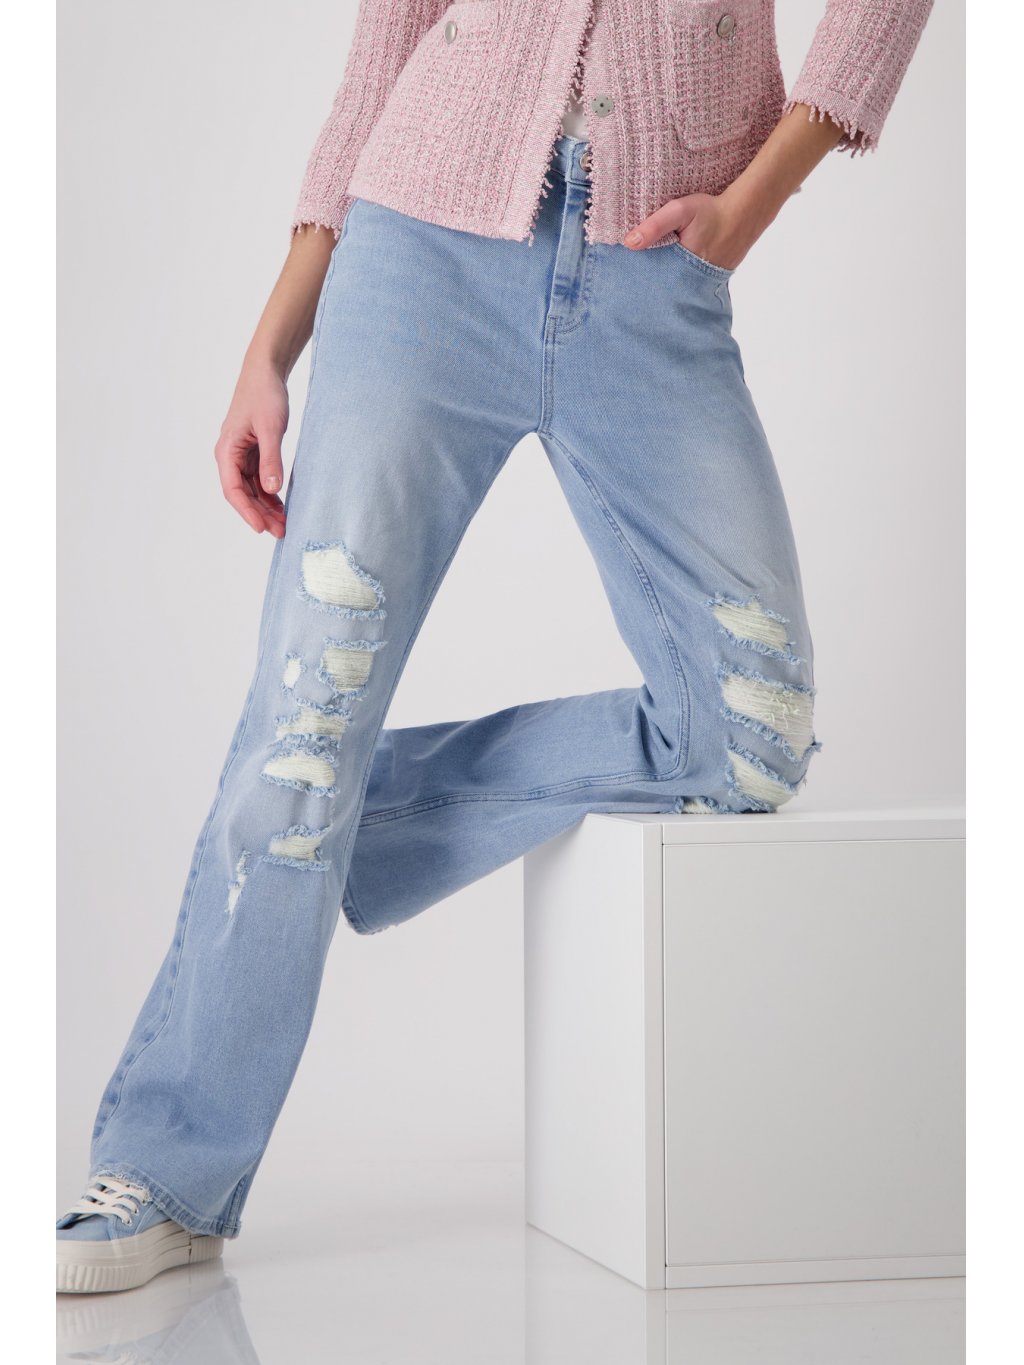 Kalhoty Monari 8371 široké světlé modré džíny s efekty  